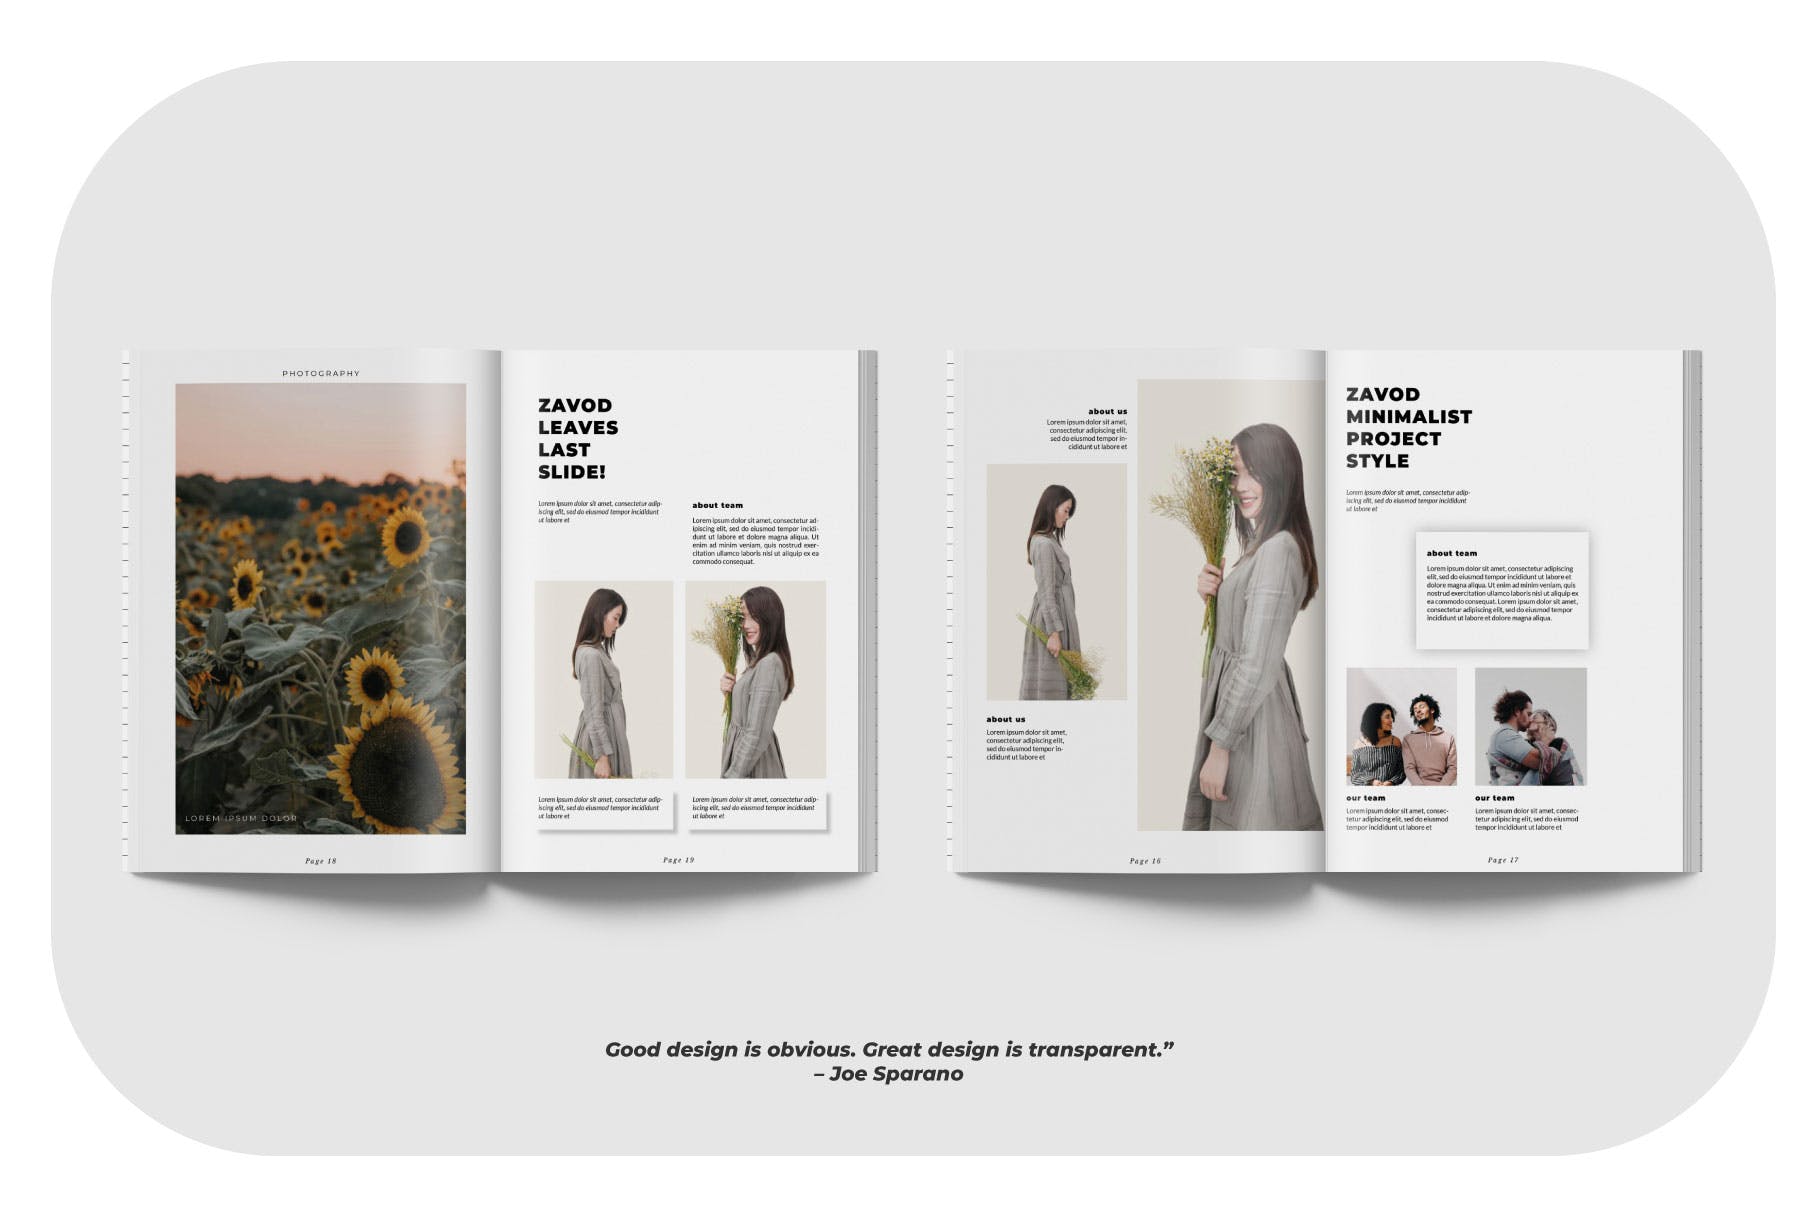 摄影/模特主题素材库精选杂志排版设计模板 ZAVOD Business Magazine Minimal Template – LS插图(3)